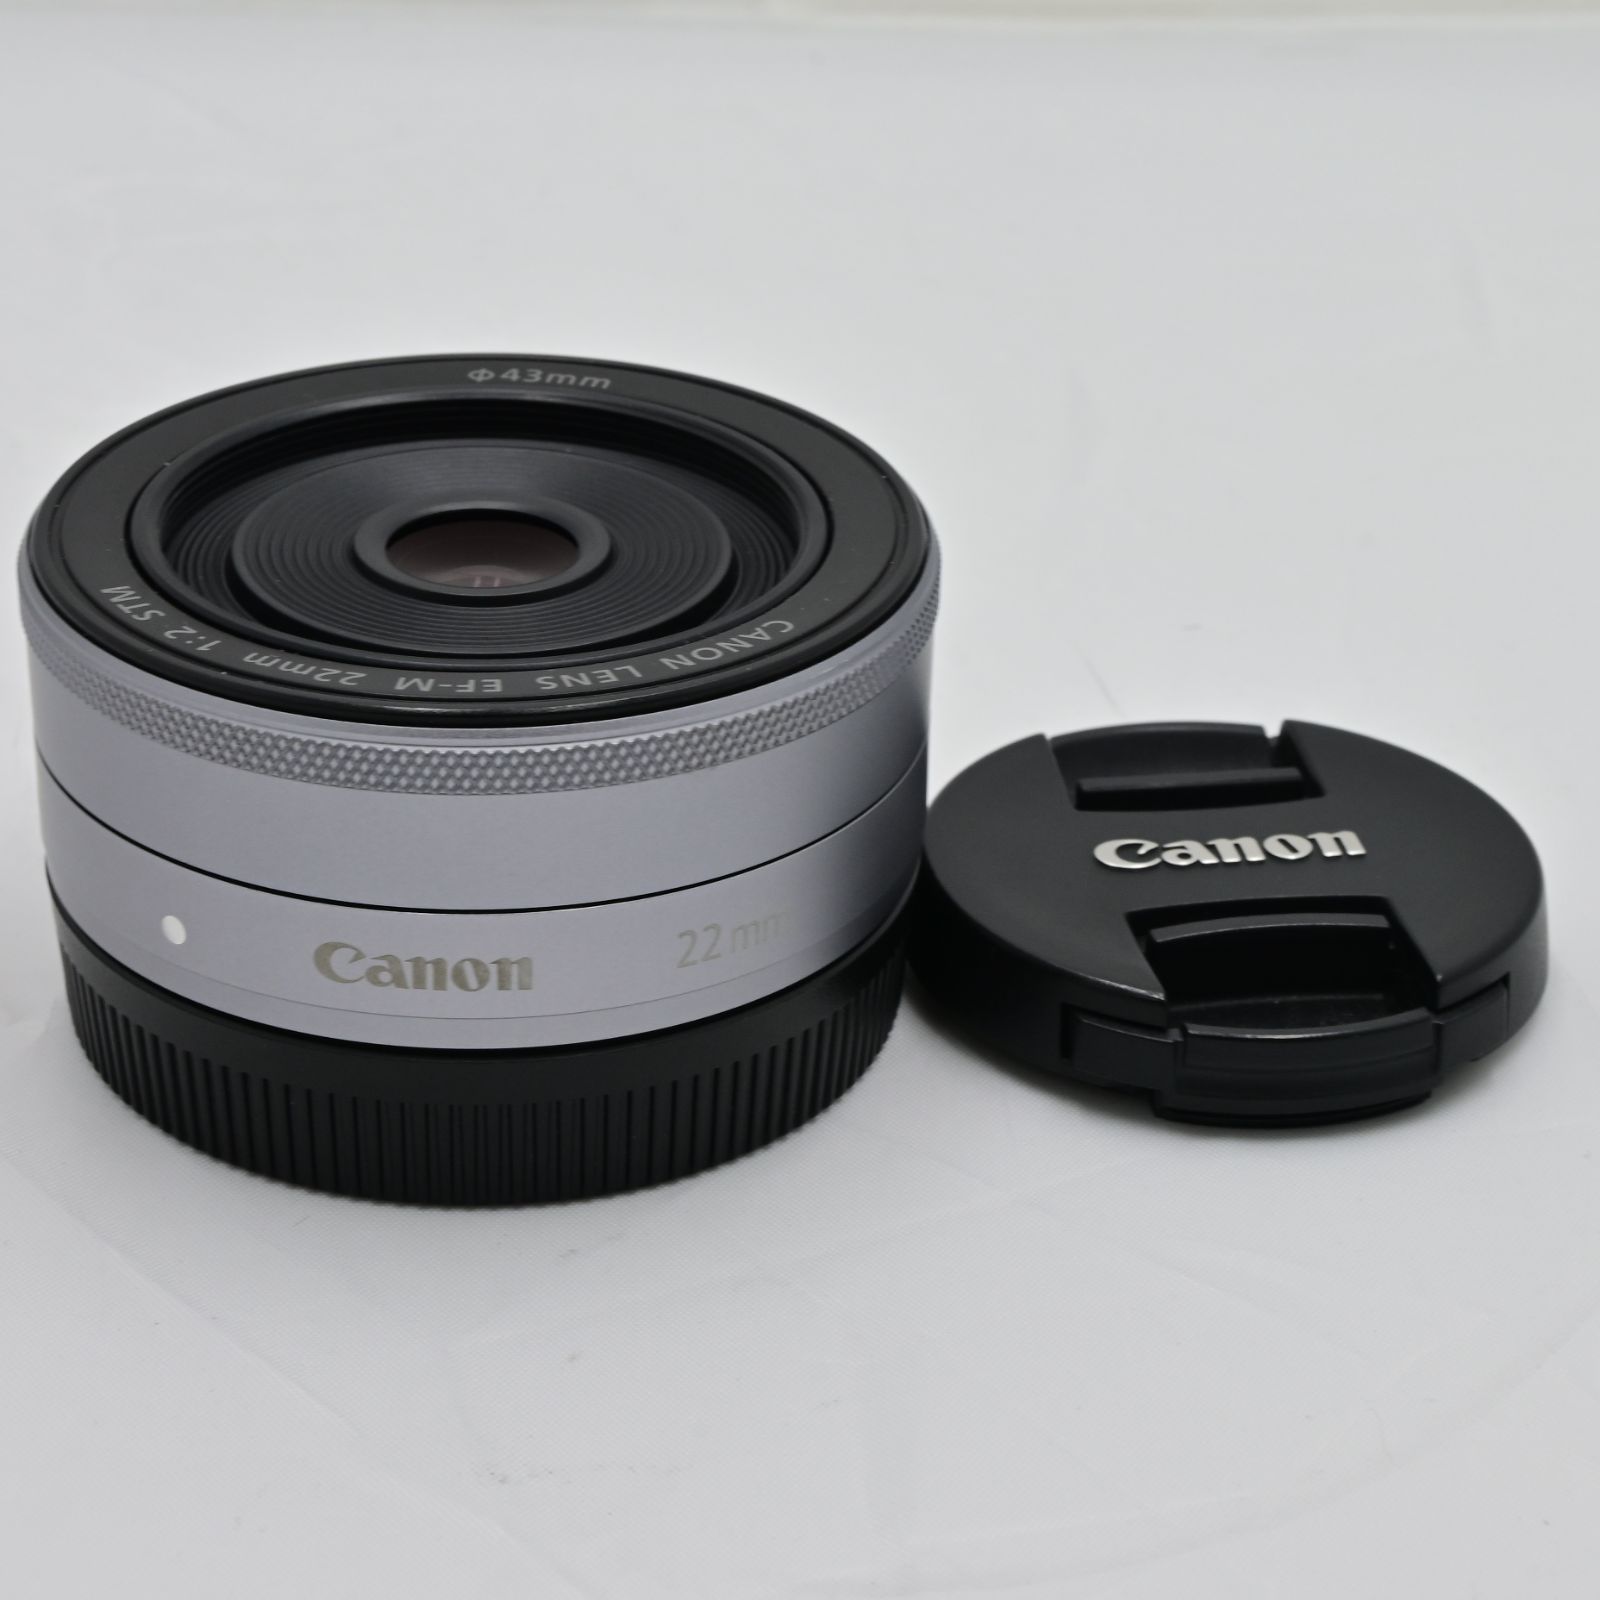 キヤノン Canon FF-M 22mm STM シルバー 単焦点レンズ